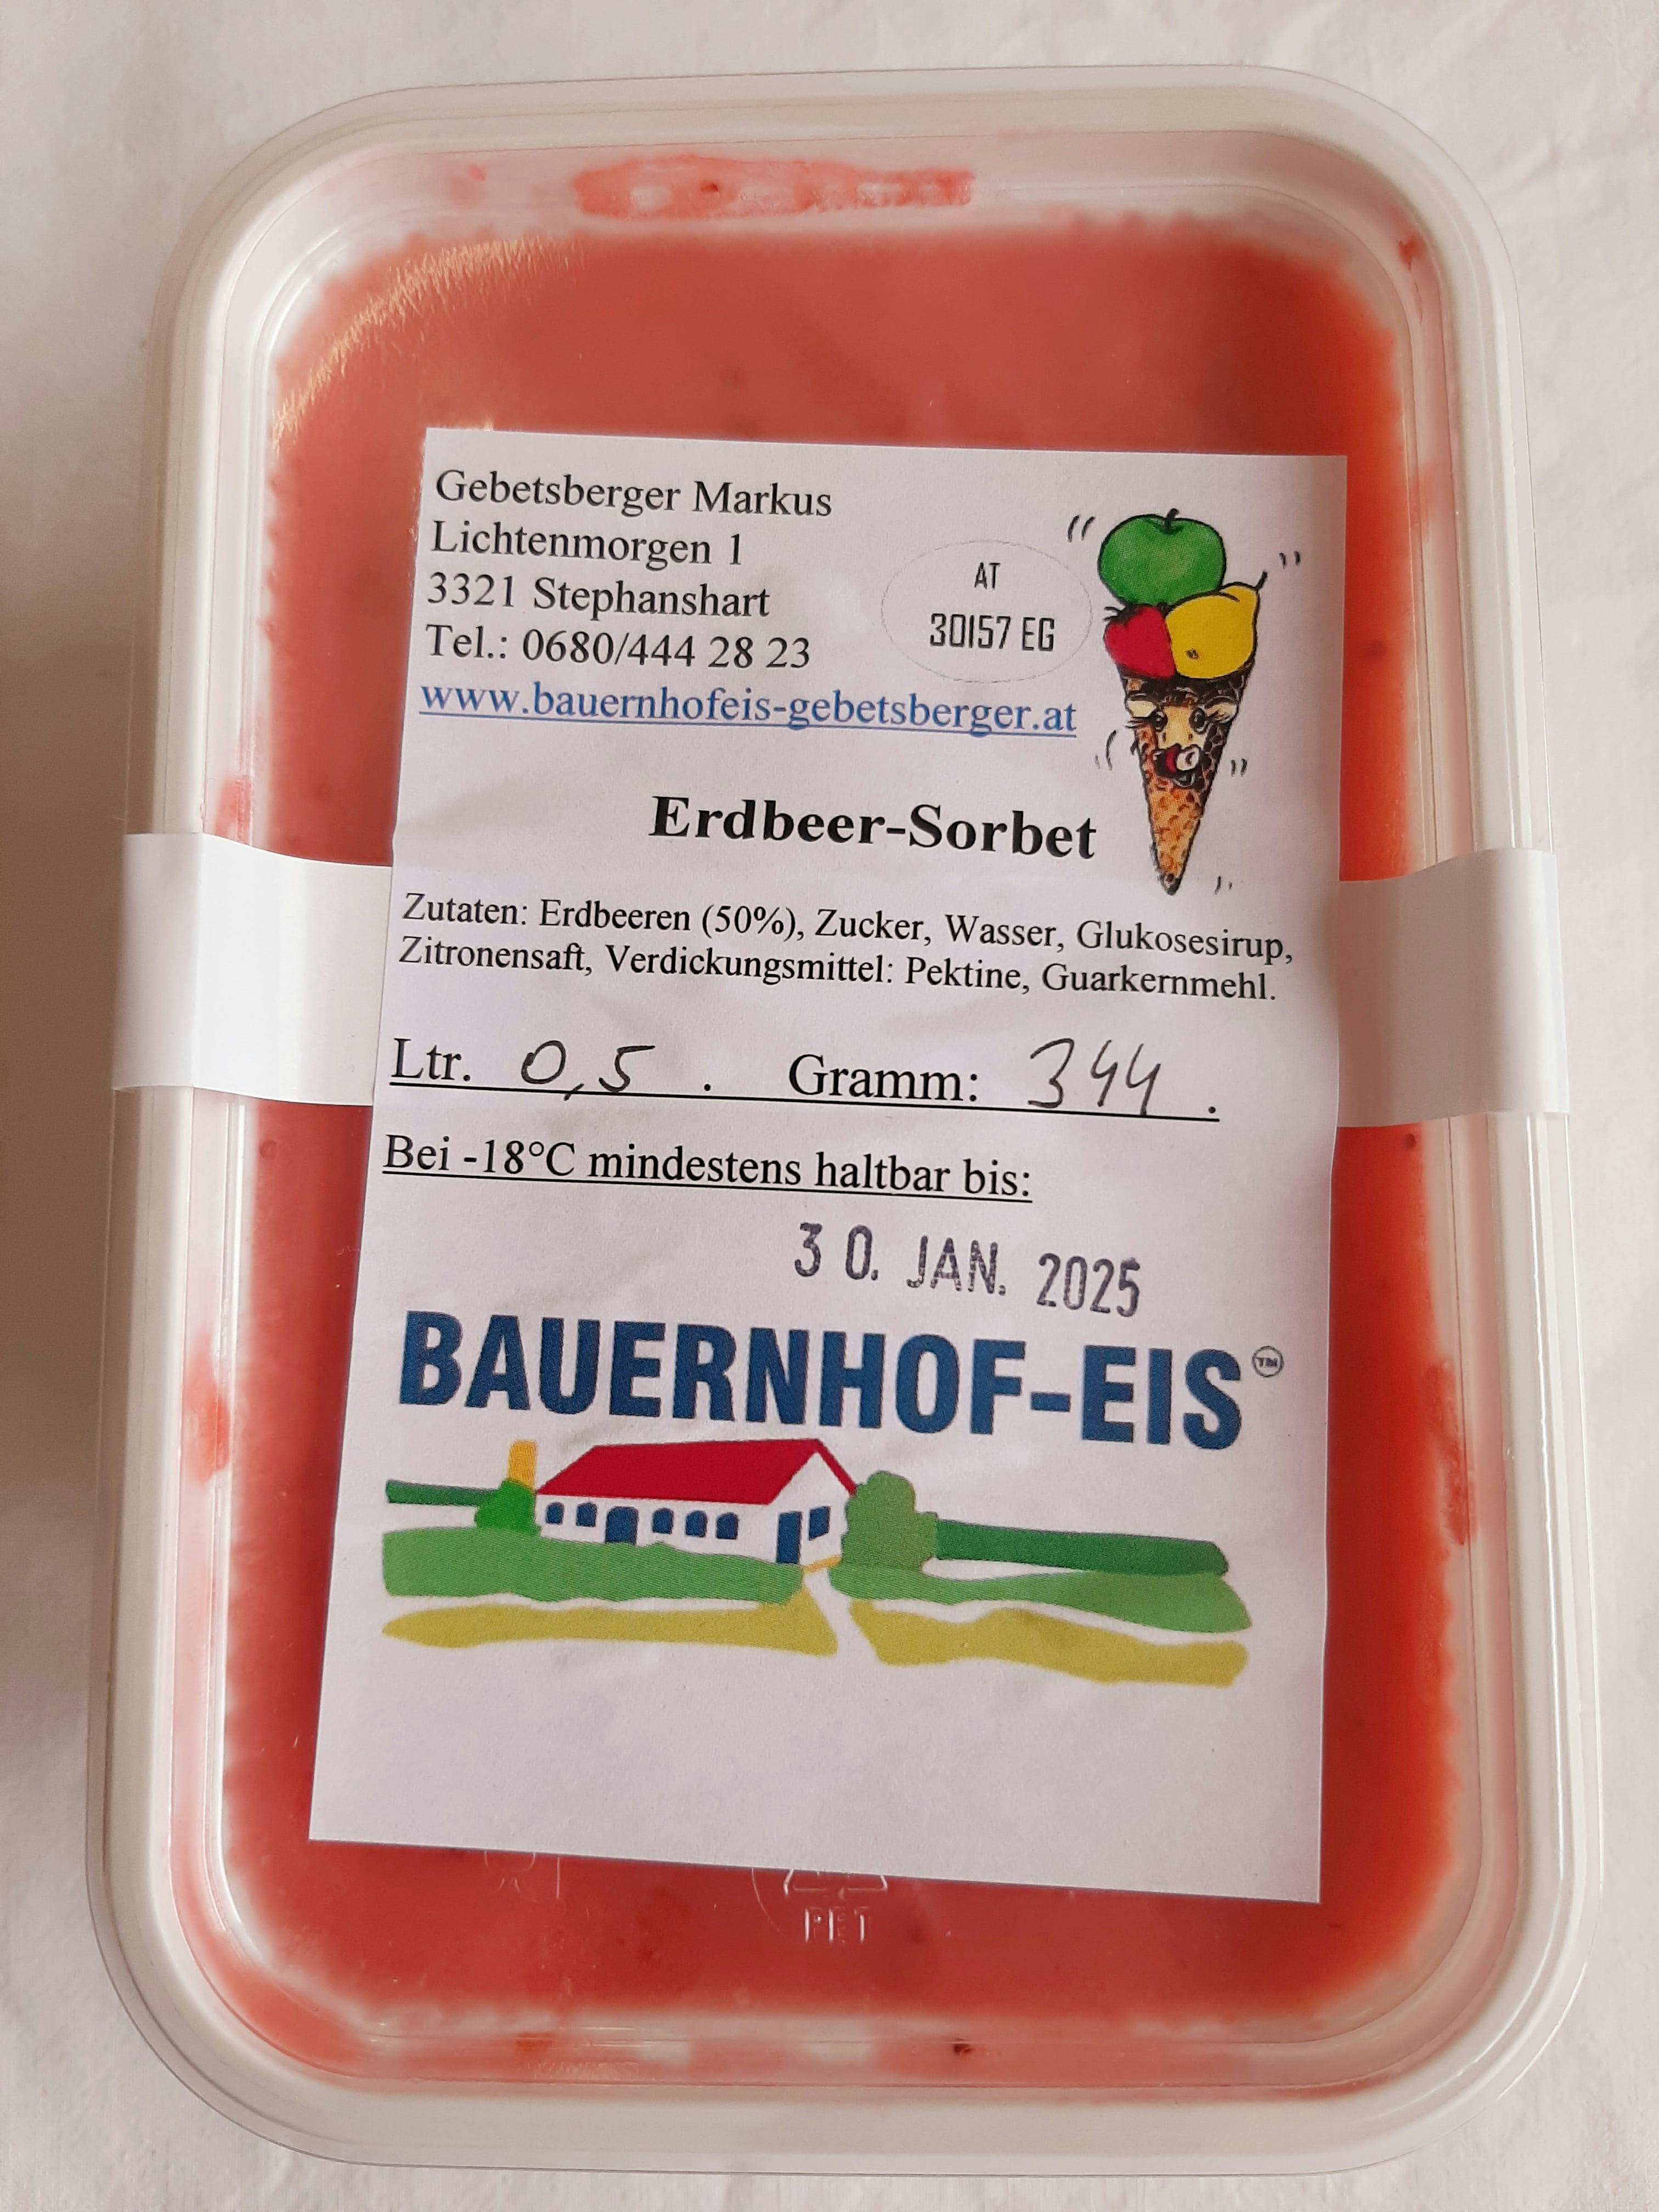 Bauernhofeis - Erdbeersorbet